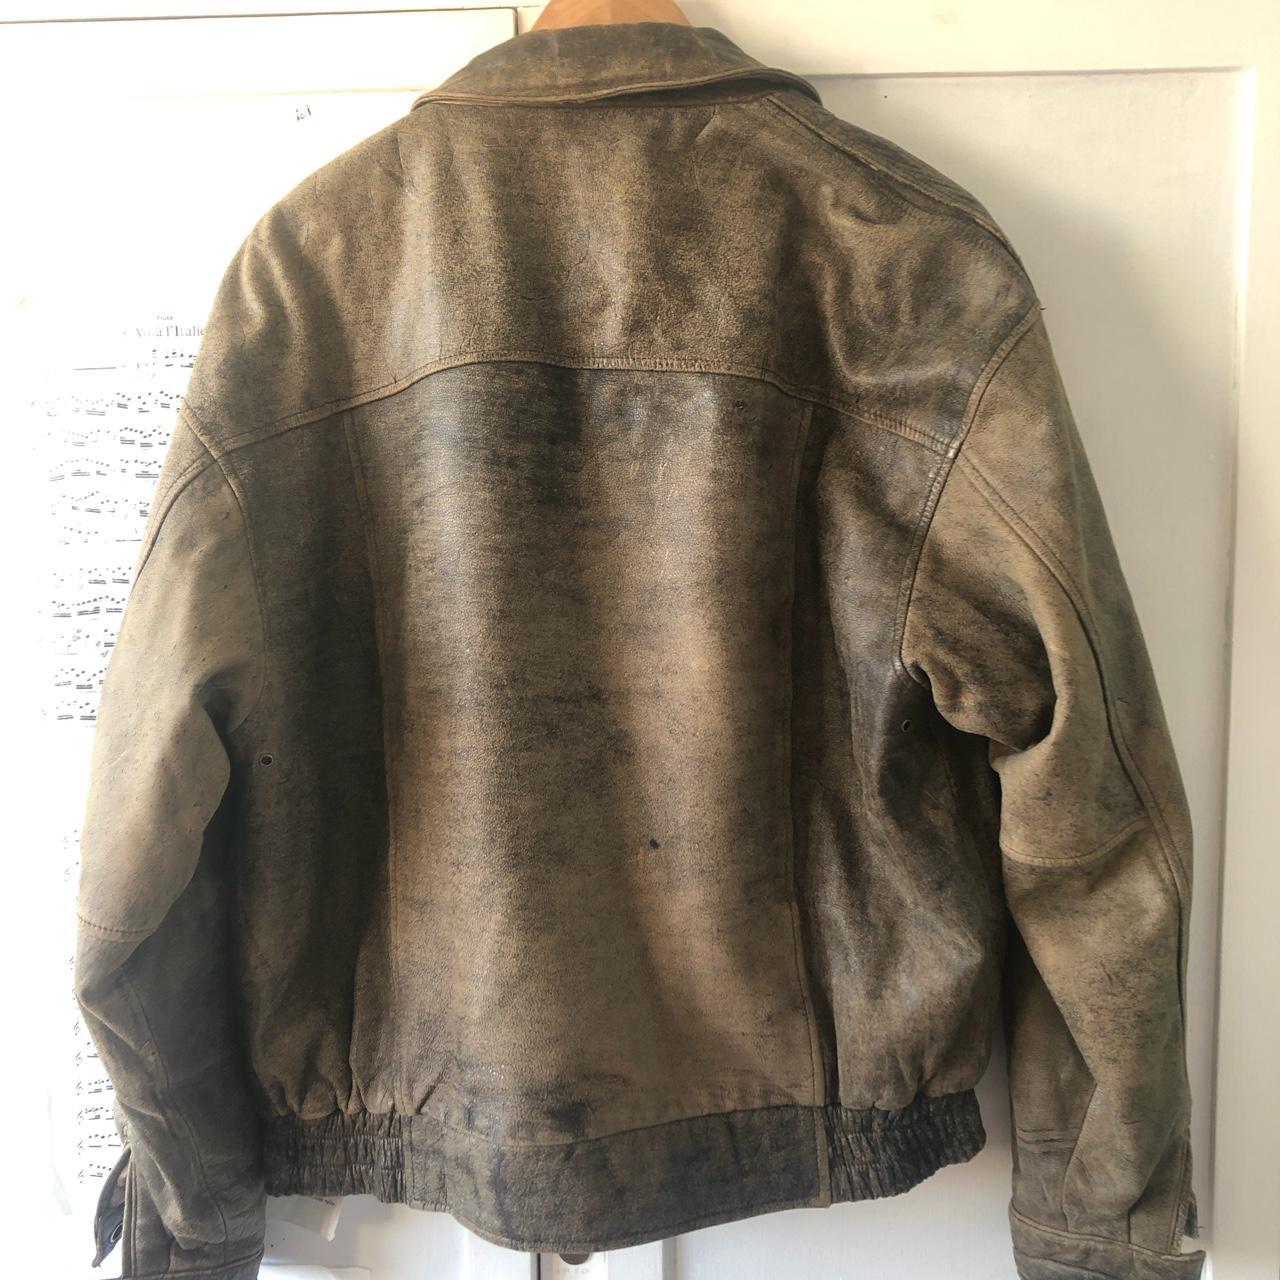 Vintage brown leather bomber jacket with... - Depop